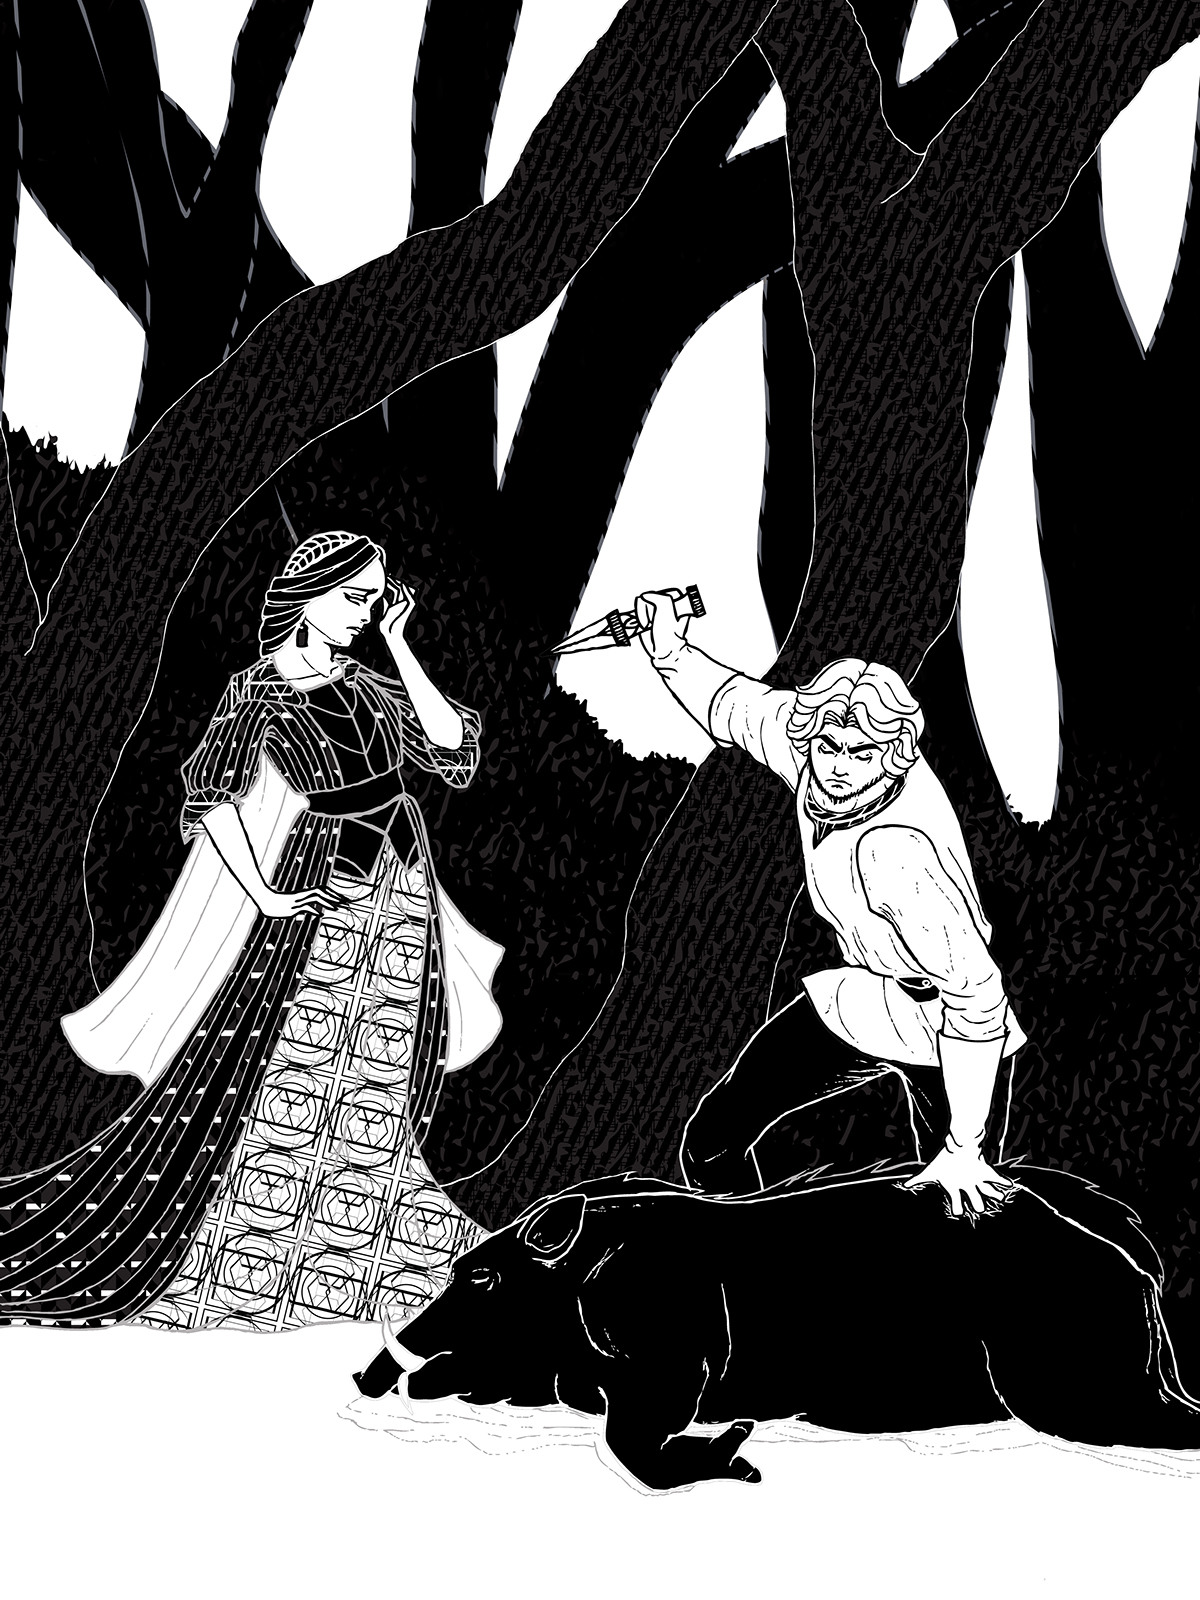 snow white queen huntsman boar wild figures male female man woman girl fairy tale Dark fairy tale grimm forrest